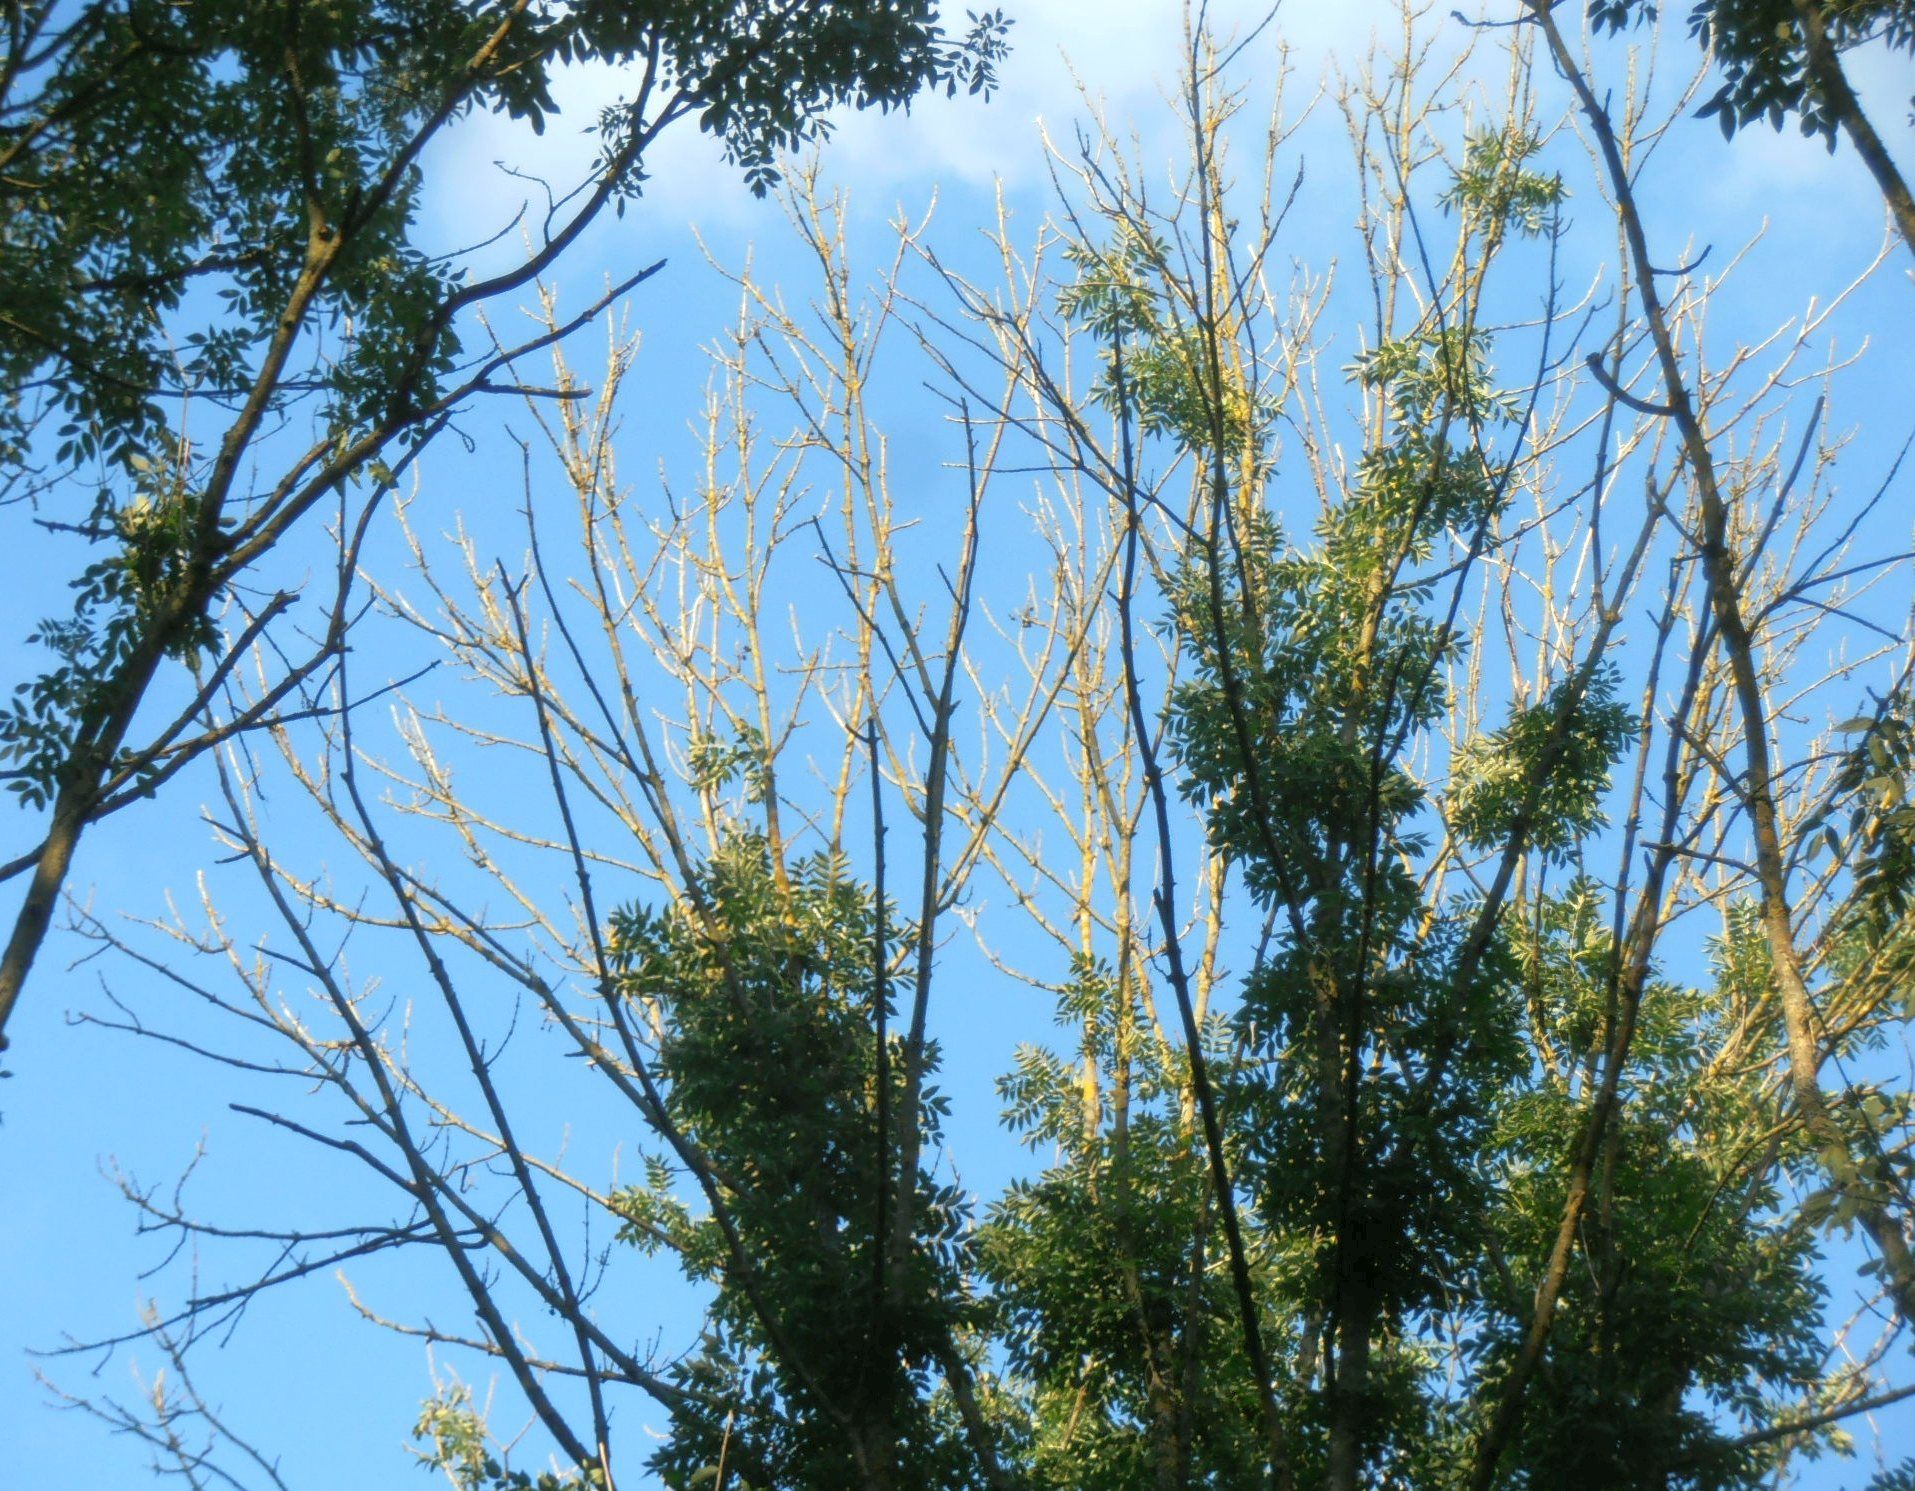 Danish ash trees facing extinction